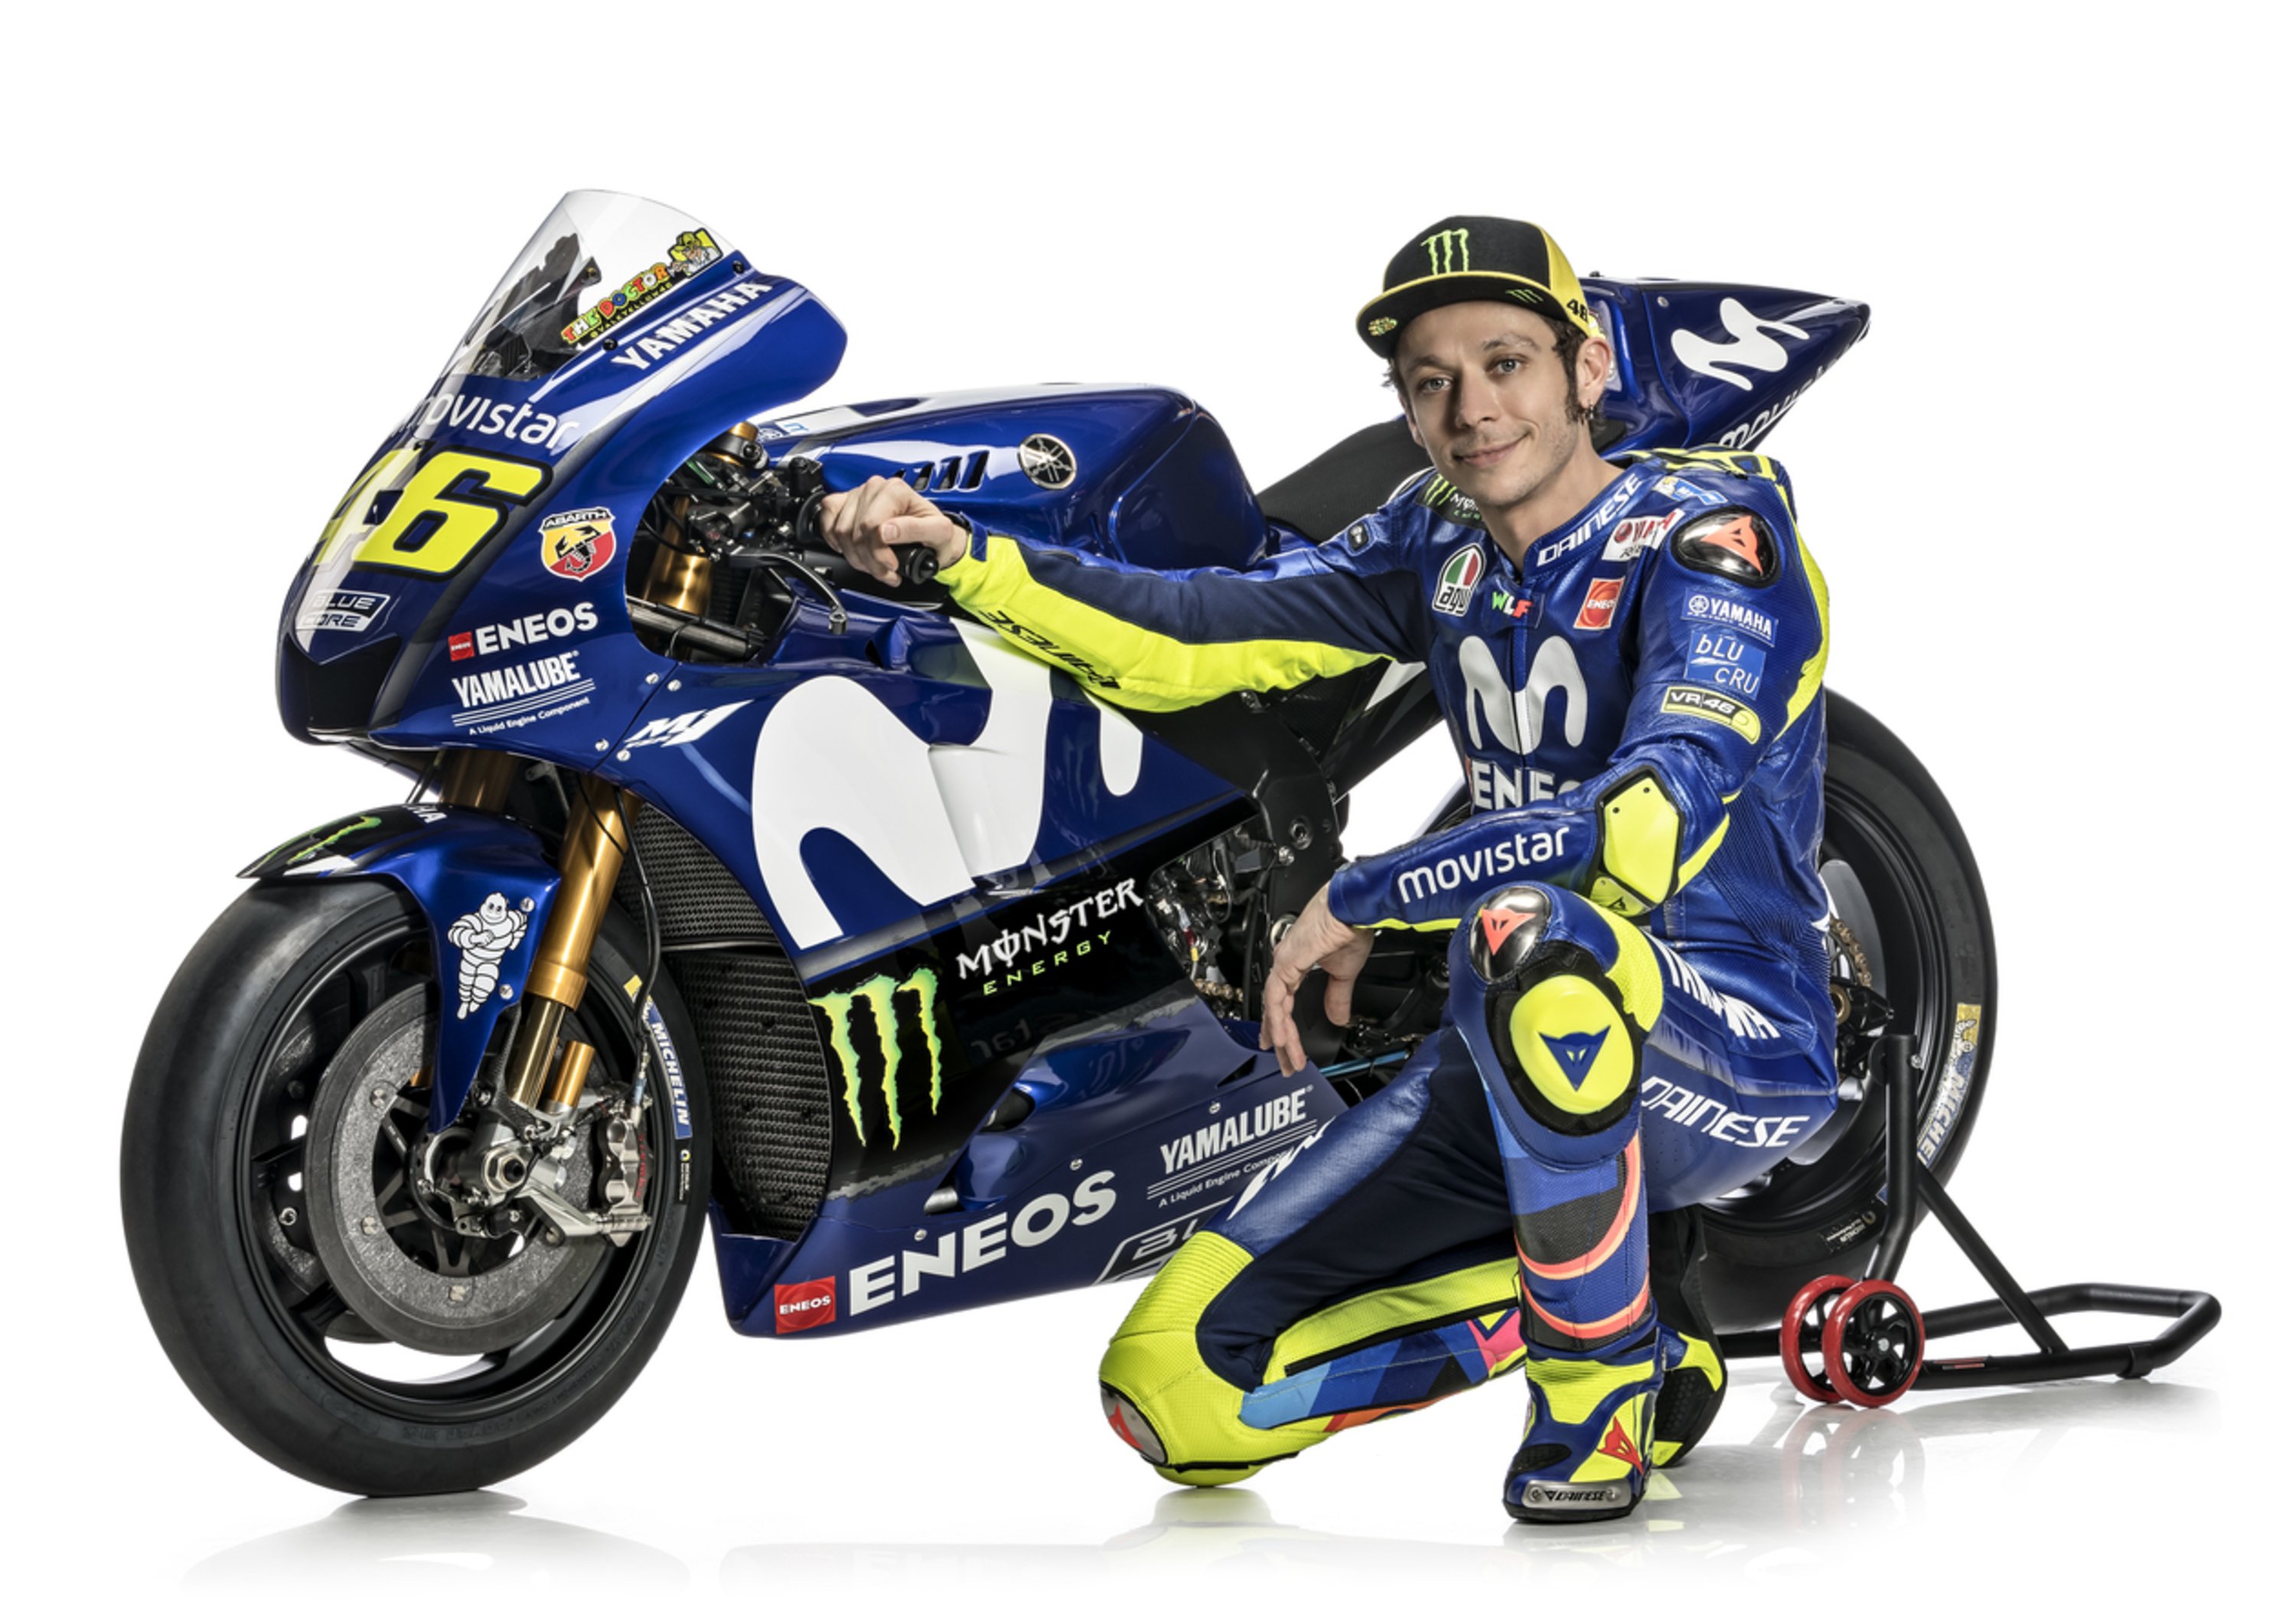 MotoGP Gallery &ndash; La Yamaha M1 2018, Rossi e Vi&ntilde;ales